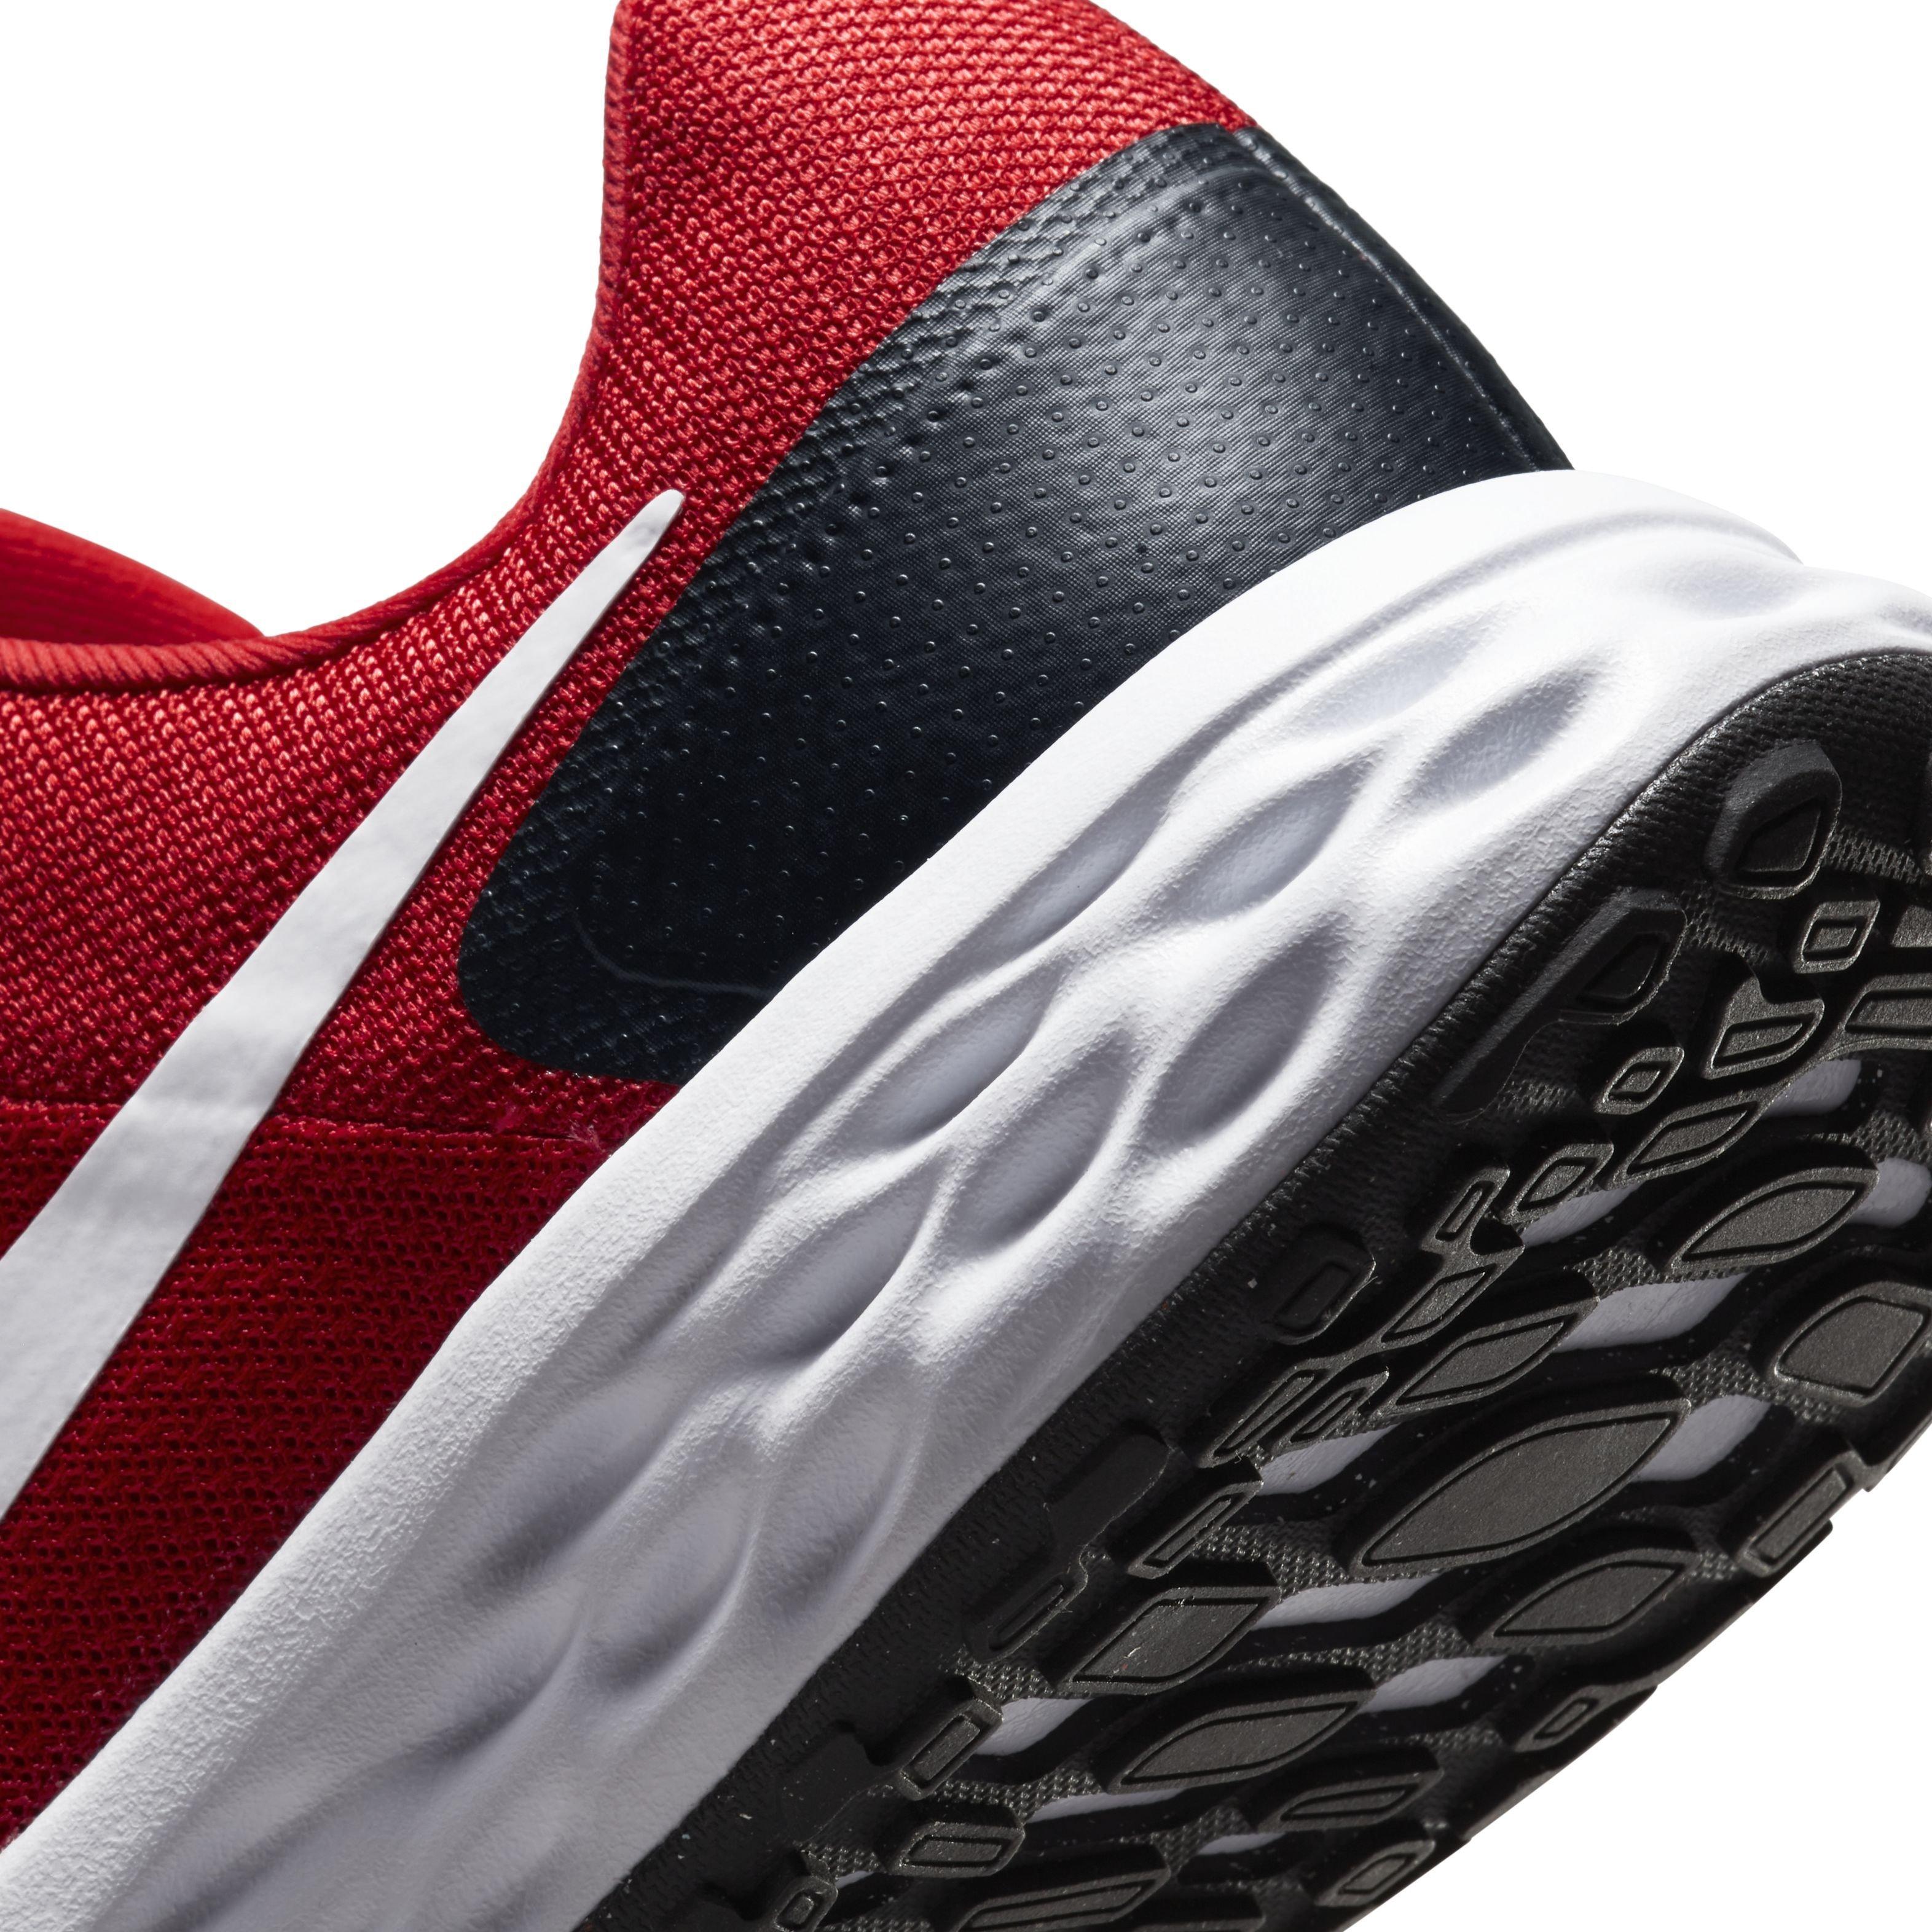 Nike Revolution Next Nature "University Red/White/Black" Men's Running Shoe